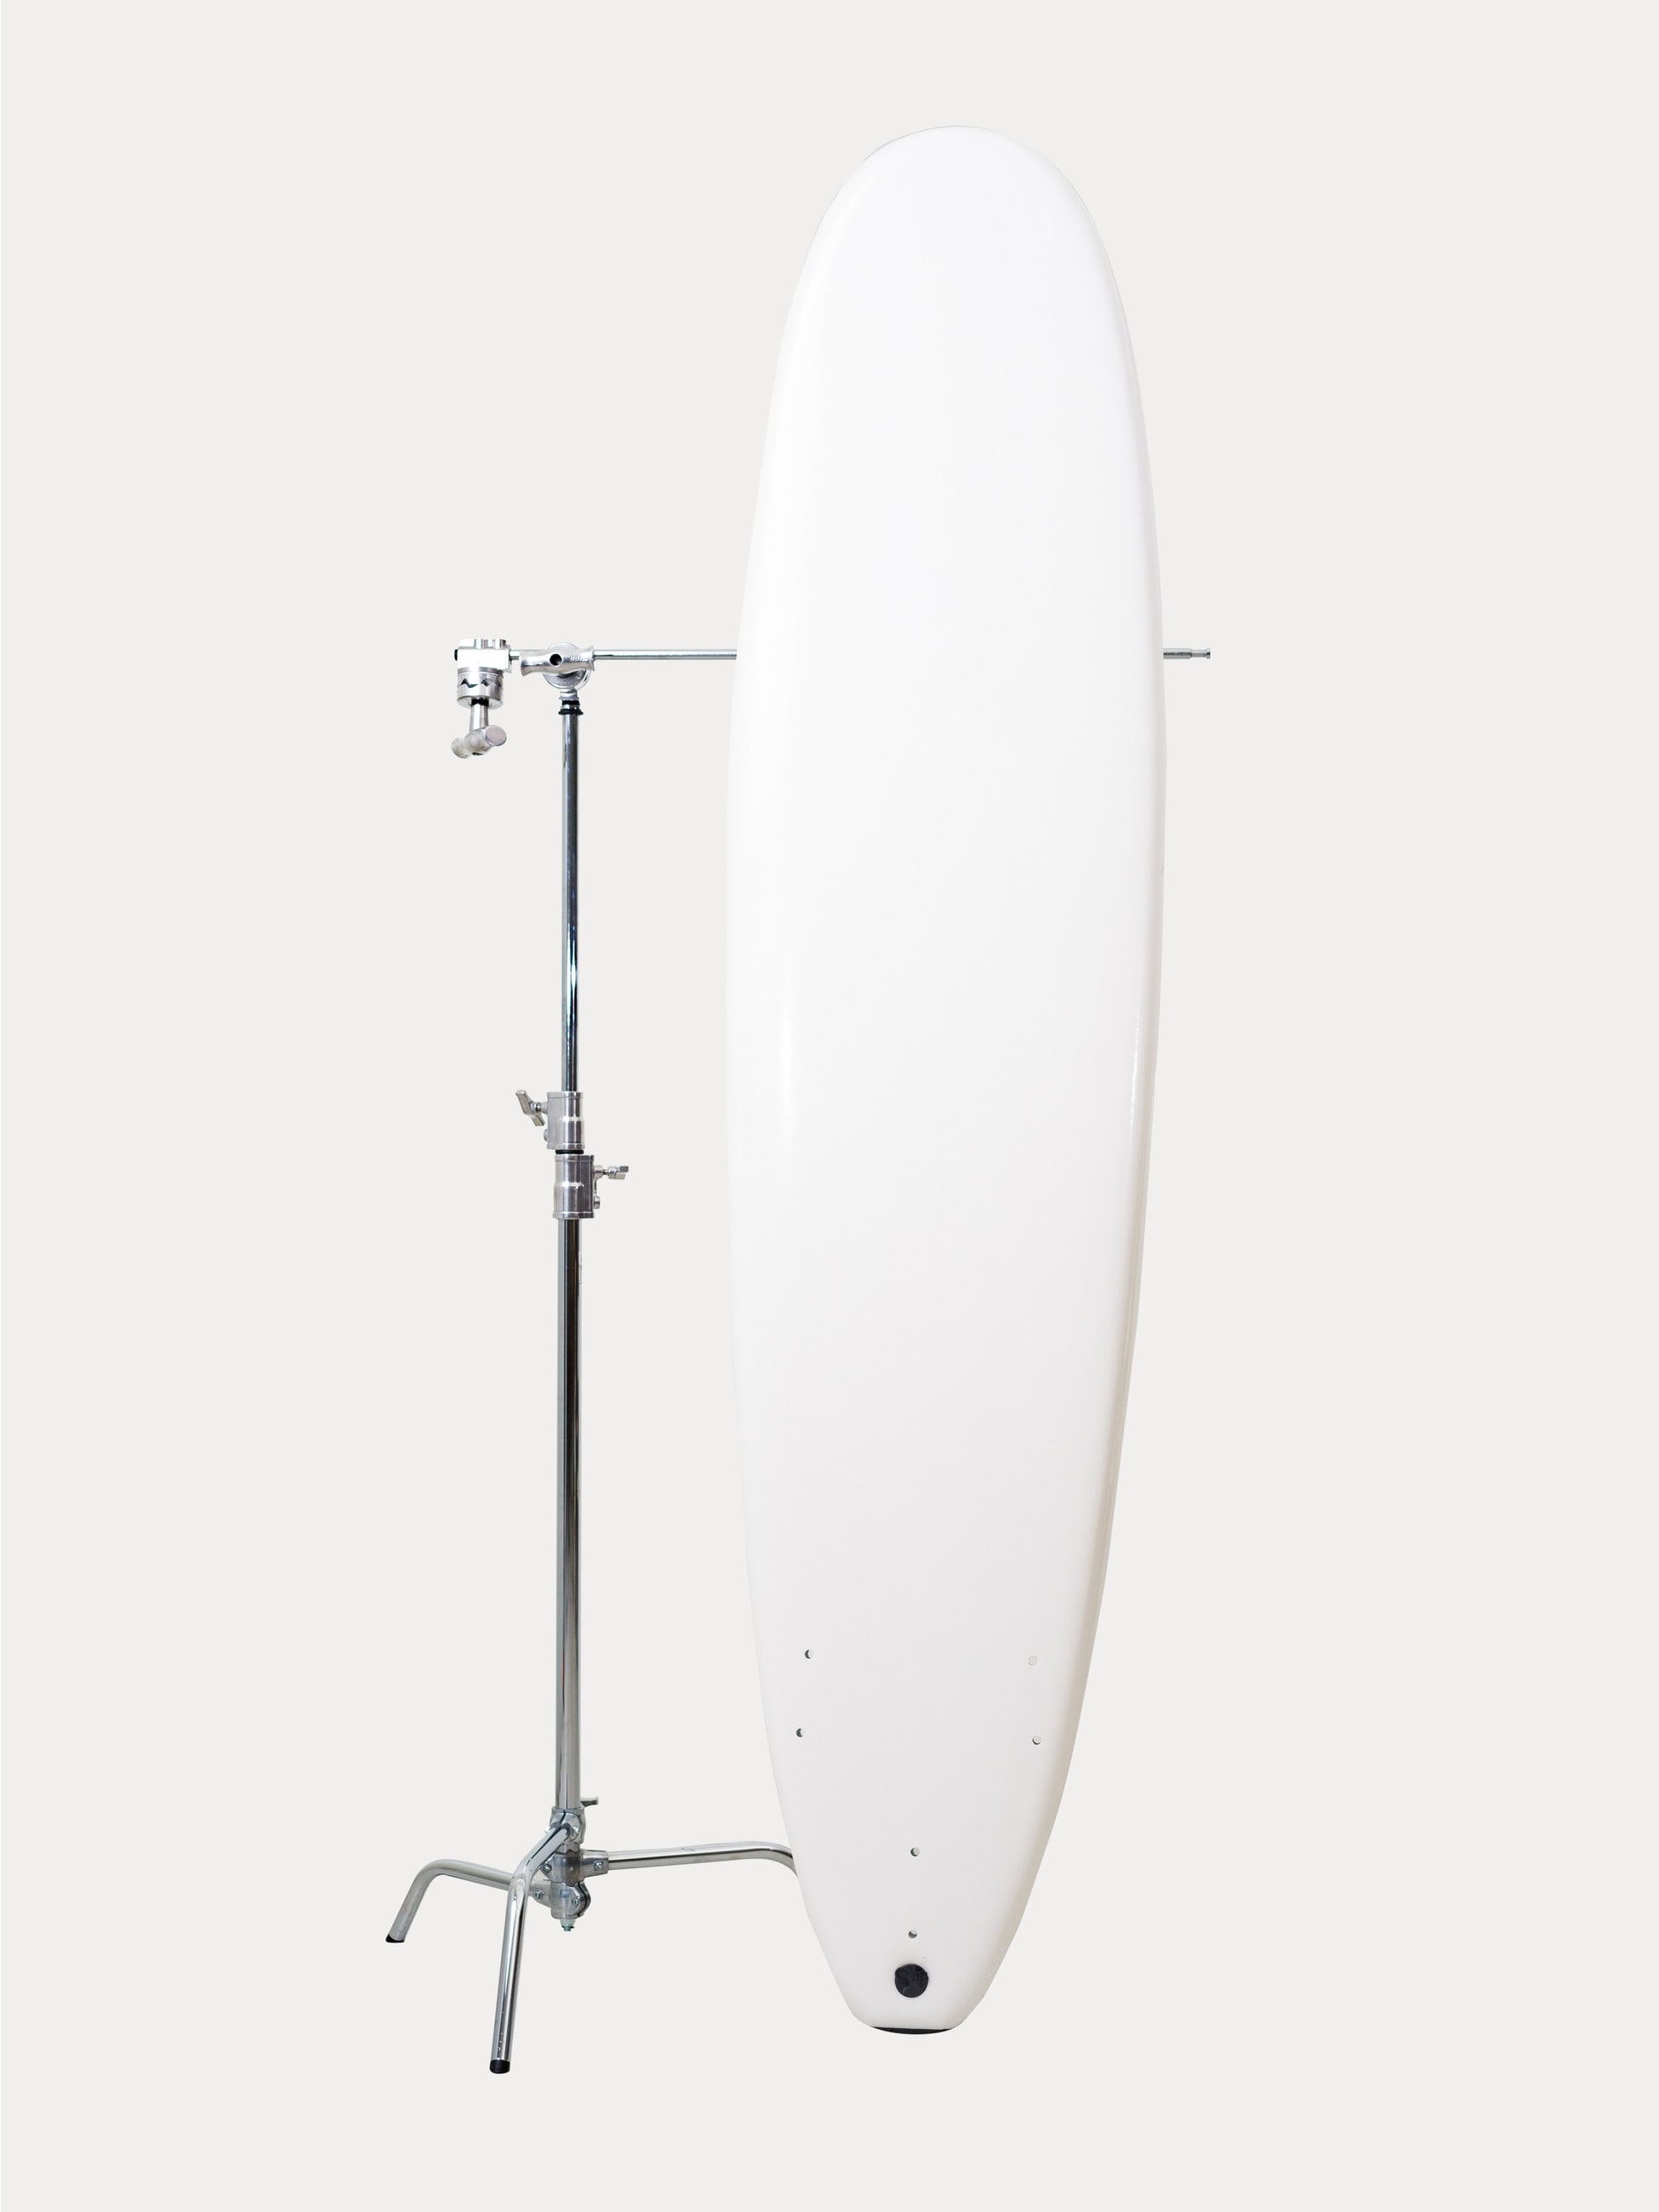 Surfboard White Series 8’0 Log-Tri Fin